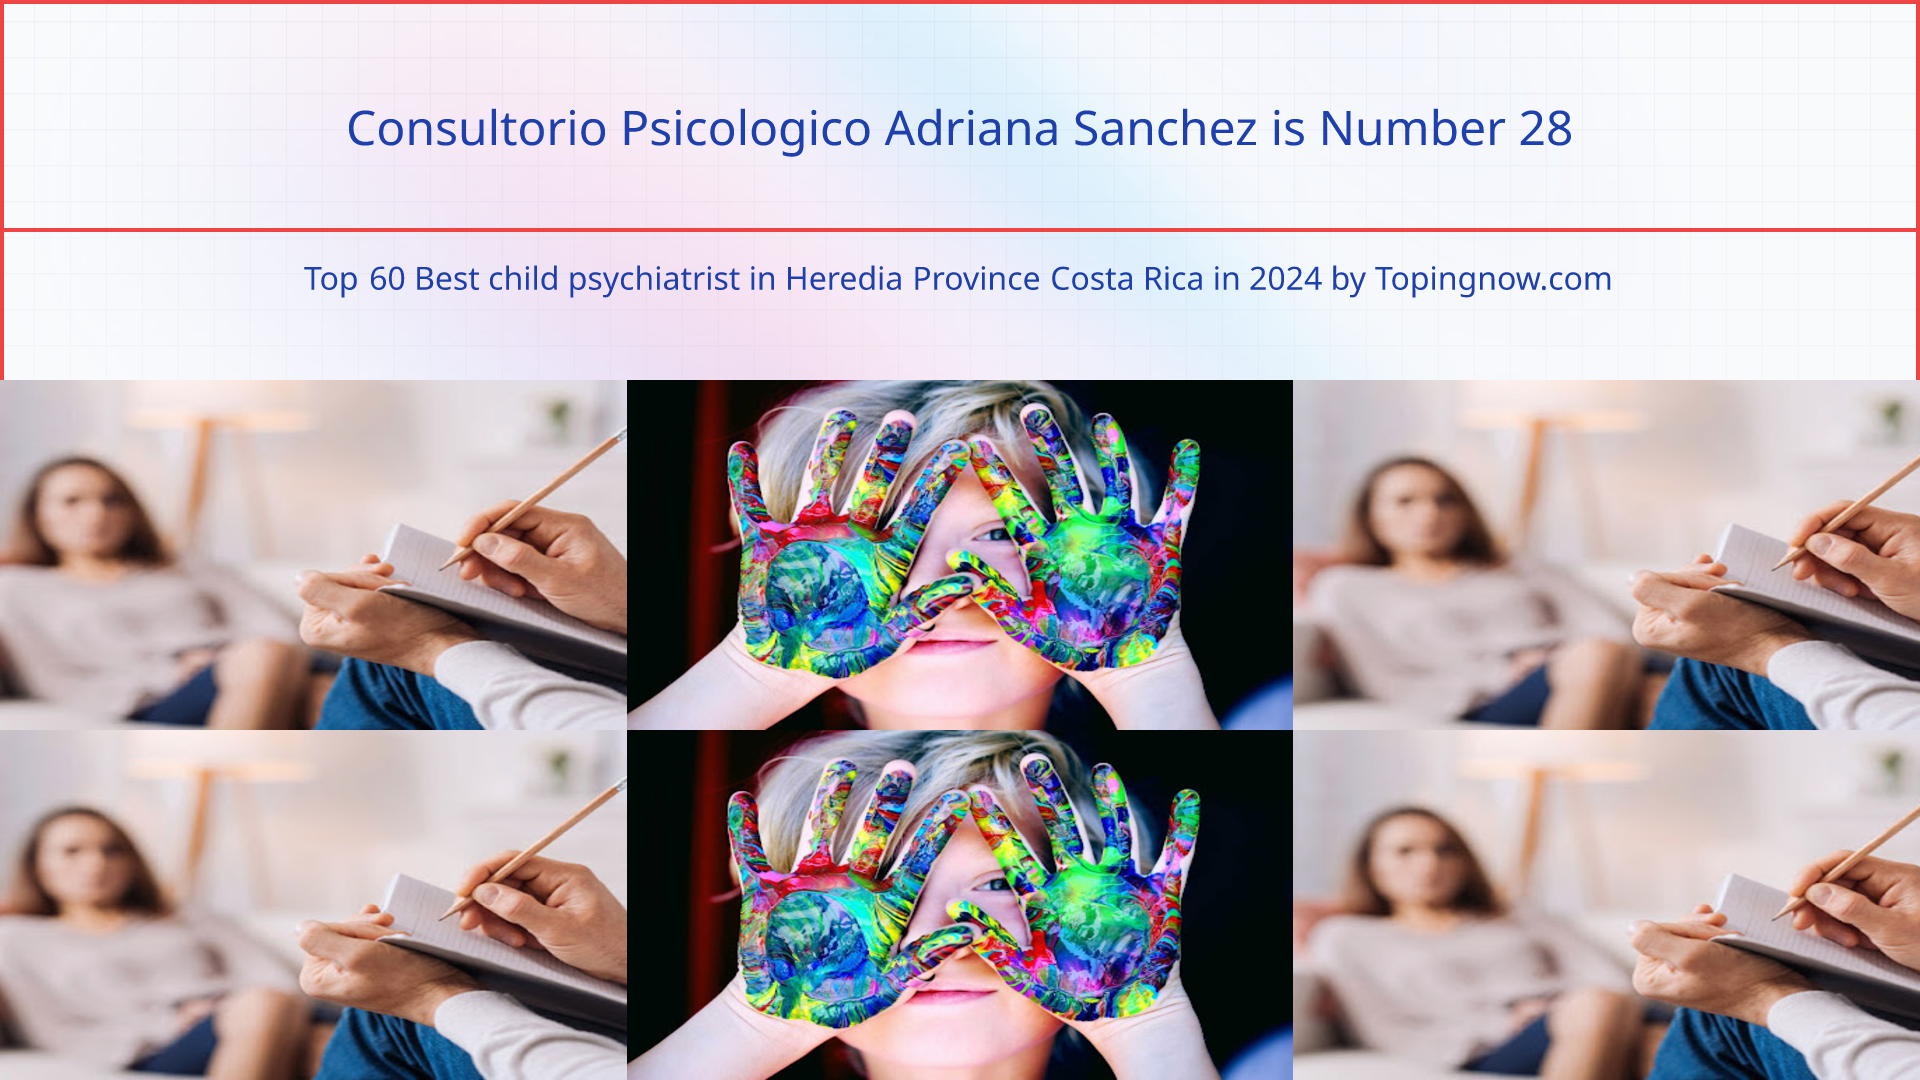 Consultorio Psicologico Adriana Sanchez: Top 60 Best child psychiatrist in Heredia Province Costa Rica in 2024